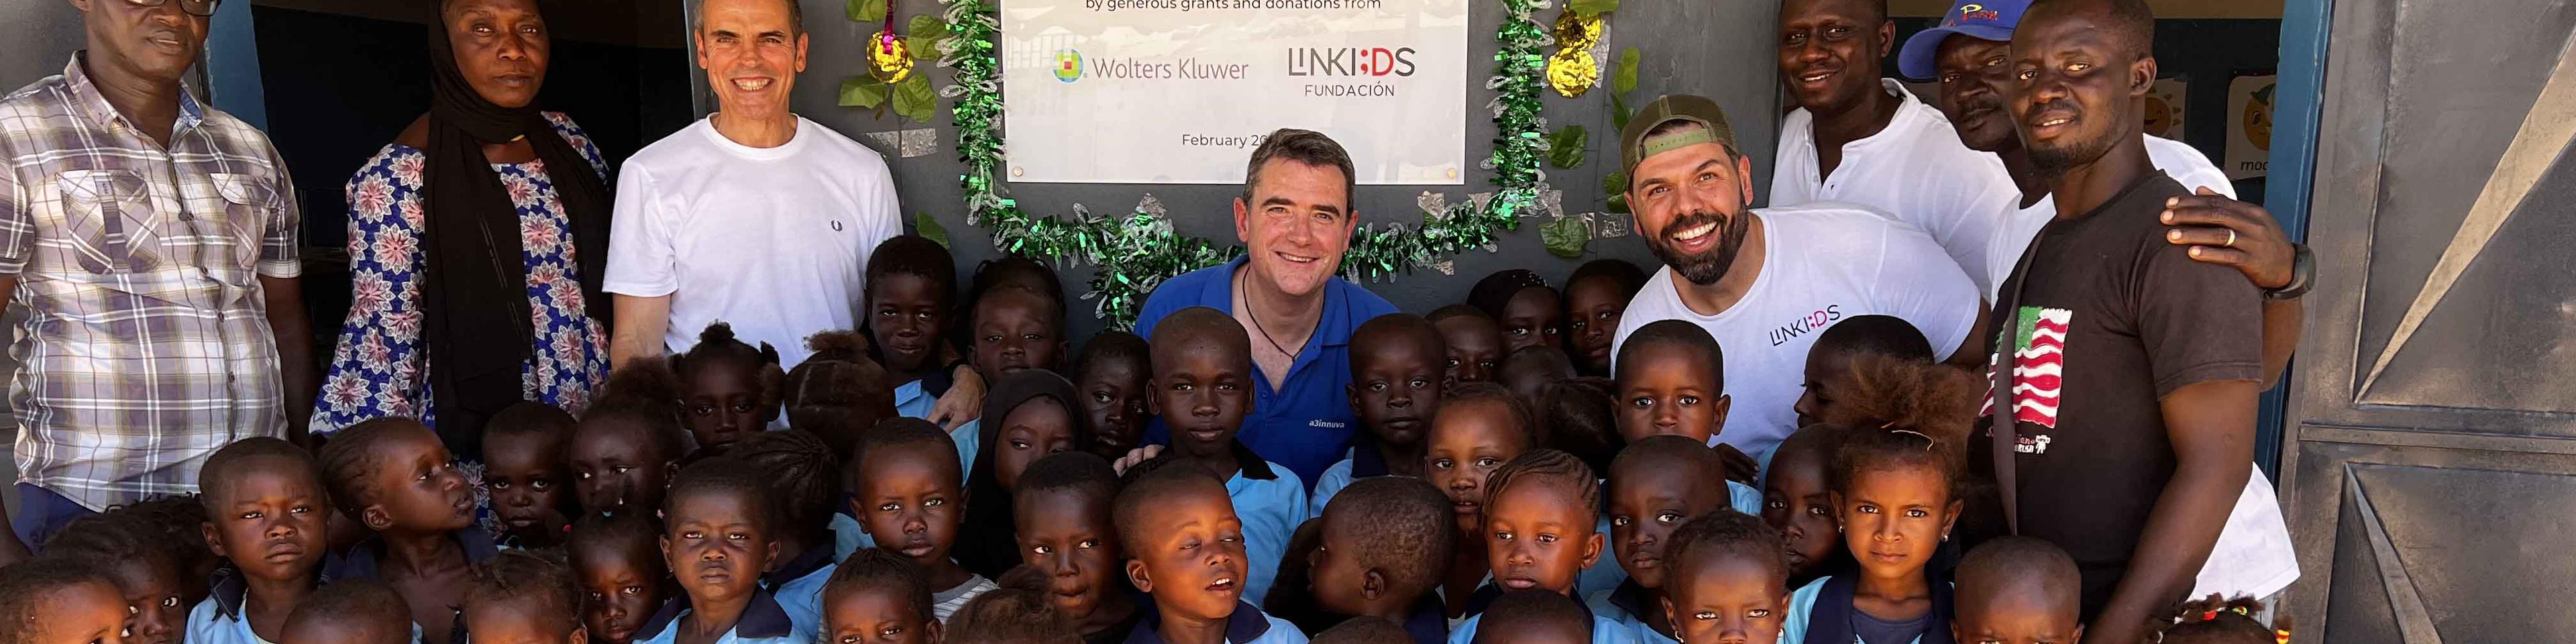 Wolters Kluwer y la Fundación LinKIDS inauguran una escuela infantil en Gambia  